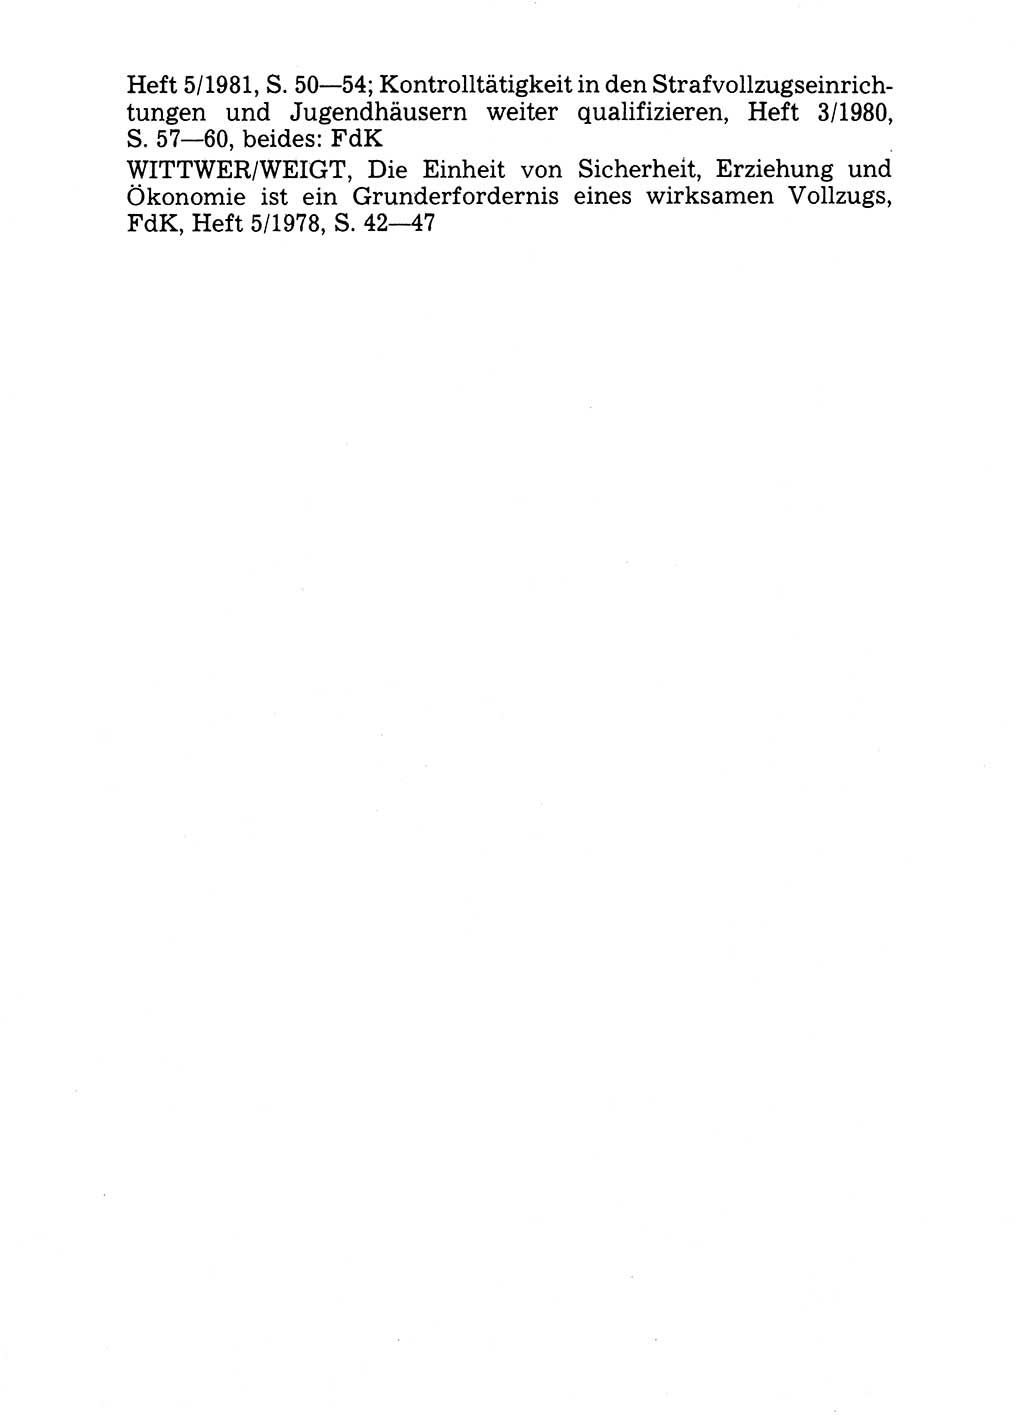 Handbuch für operative Dienste, Abteilung Strafvollzug (SV) [Ministerium des Innern (MdI) Deutsche Demokratische Republik (DDR)] 1981, Seite 22 (Hb. op. D. Abt. SV MdI DDR 1981, S. 22)